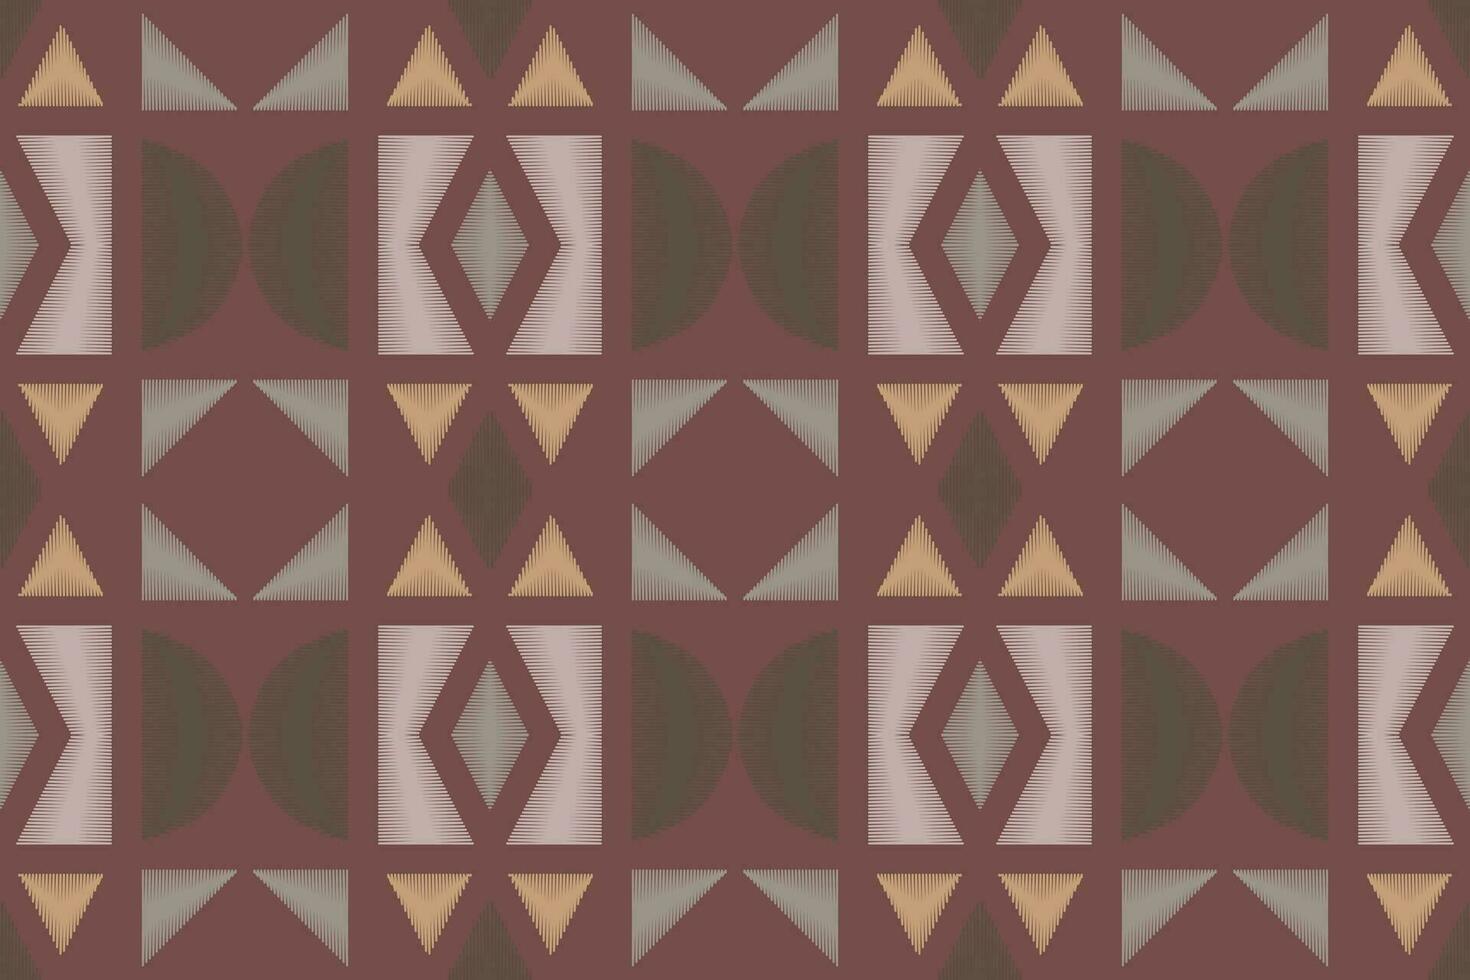 ikat damast- paisley broderi bakgrund. ikat blommig geometrisk etnisk orientalisk mönster traditionell. ikat aztec stil abstrakt design för skriva ut textur, tyg, saree, sari, matta. vektor